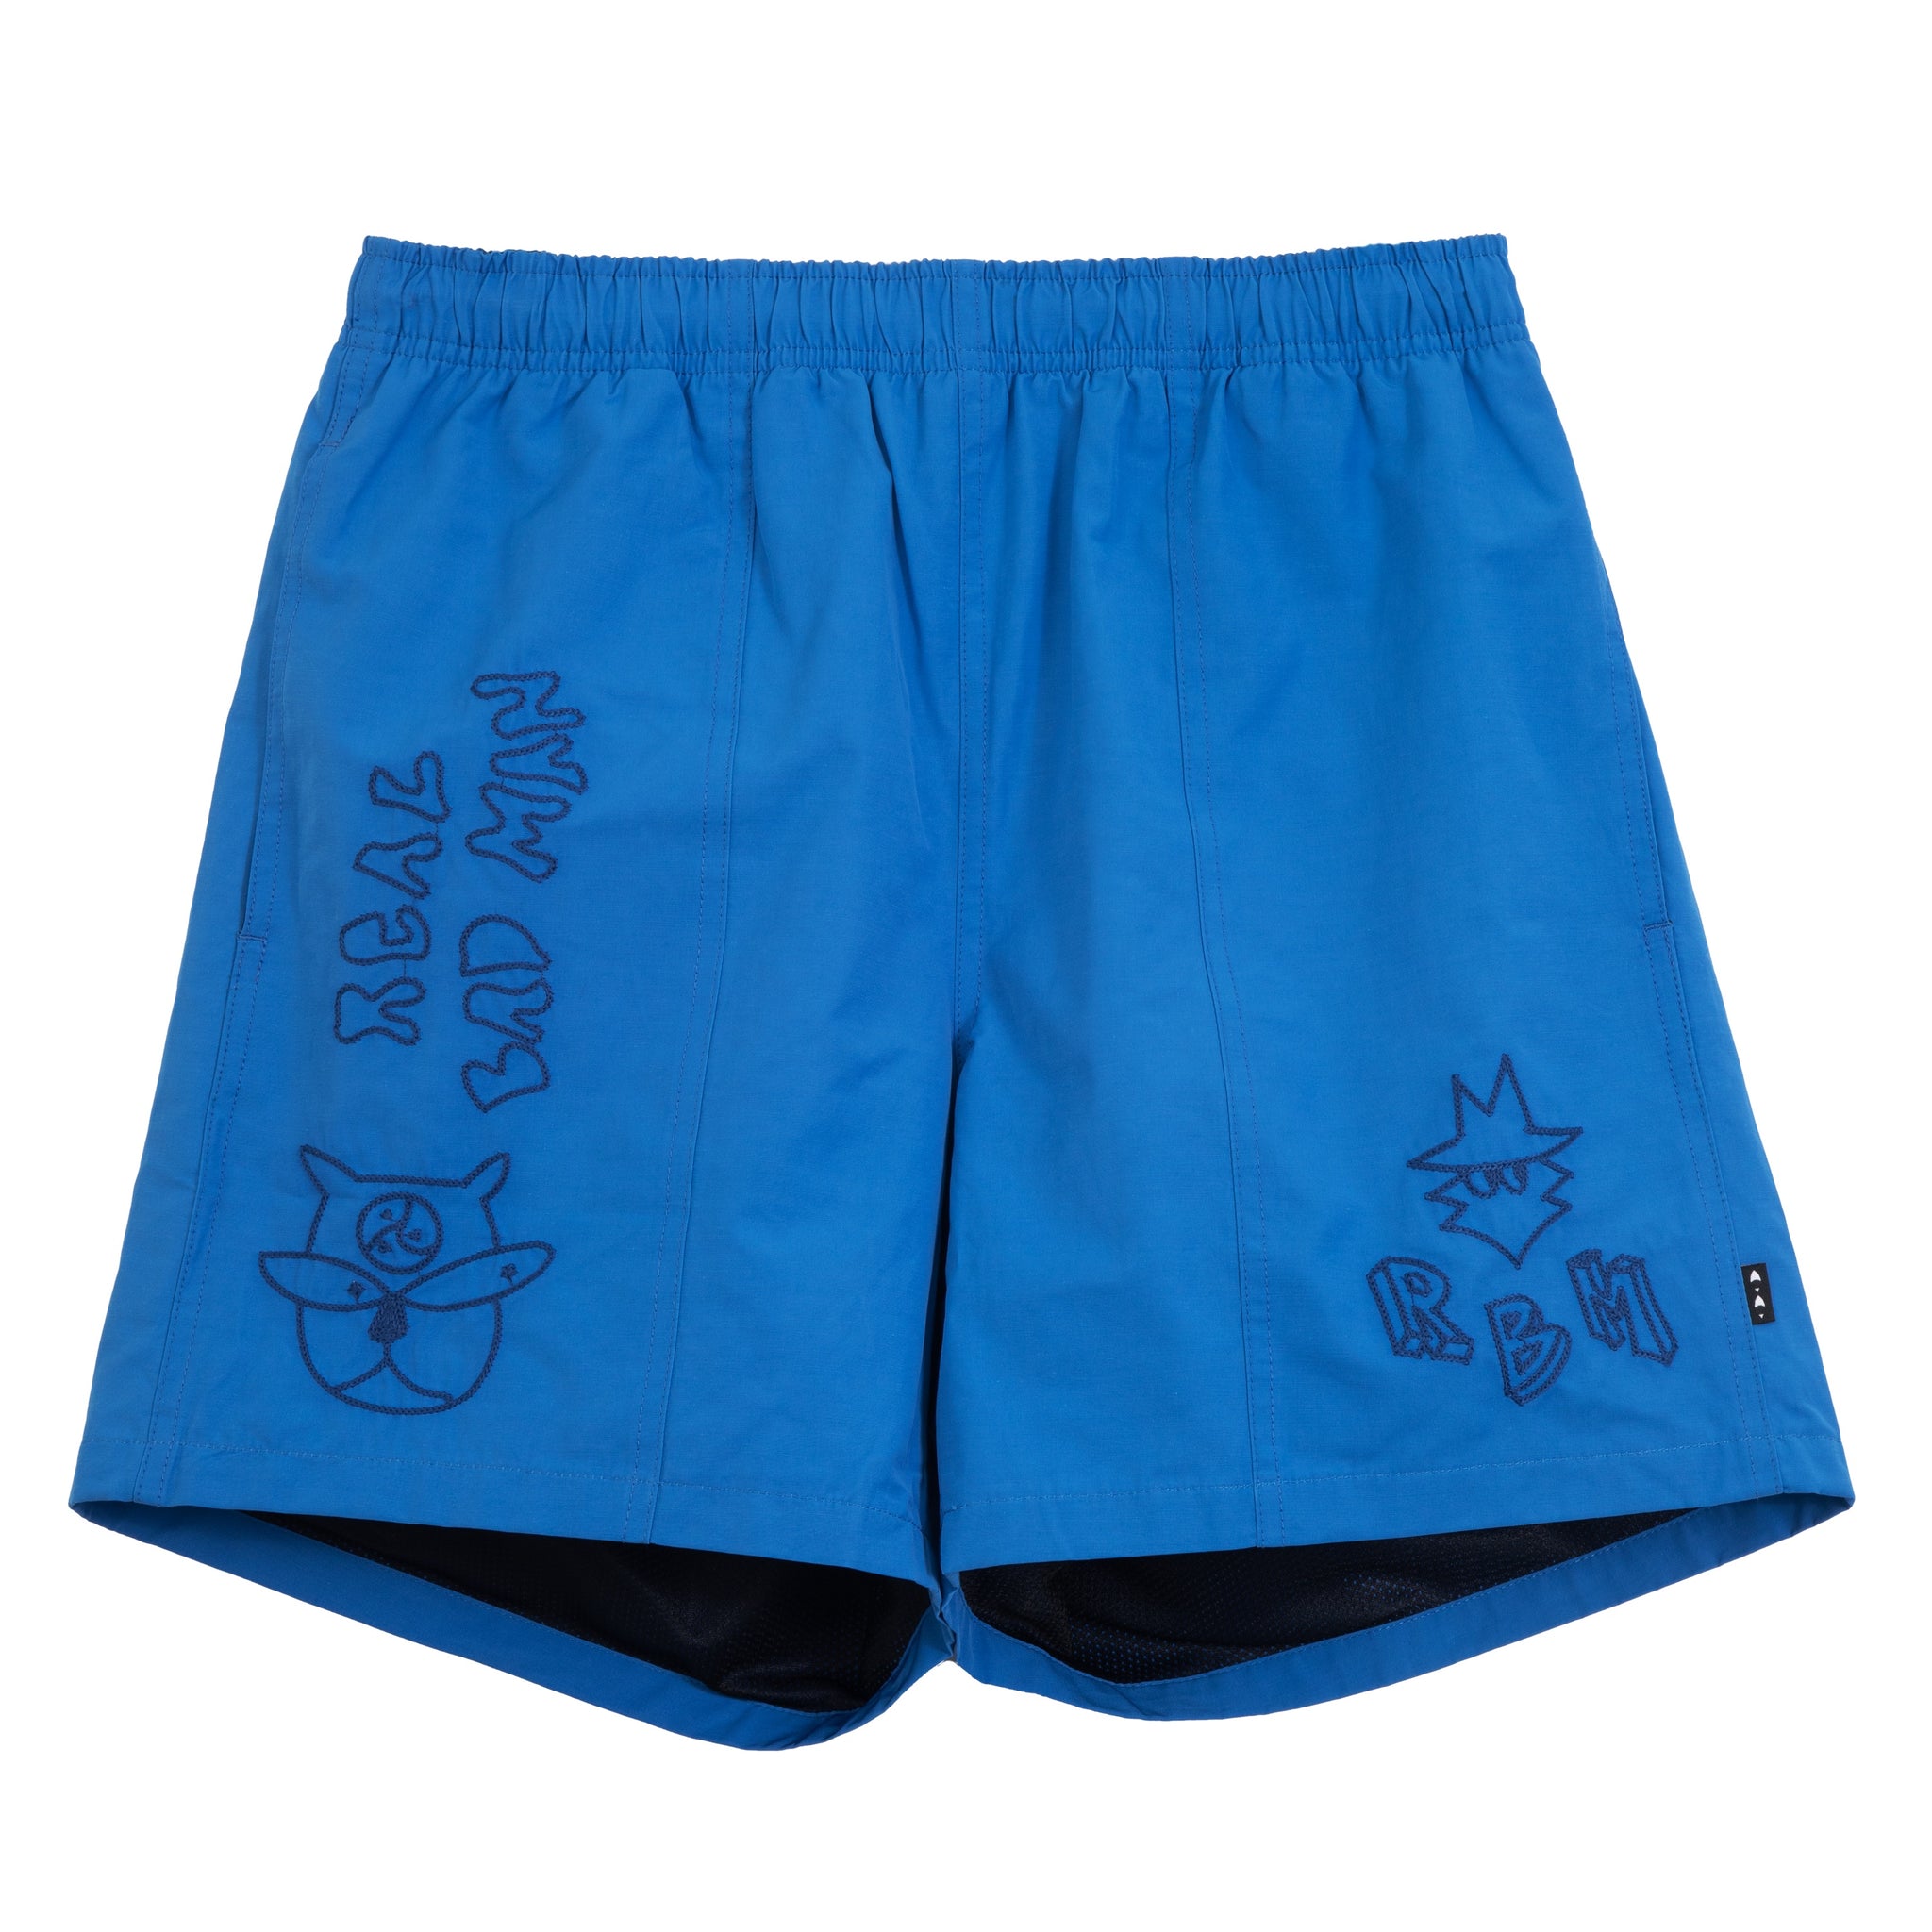 Deliverance Shorts - Blue